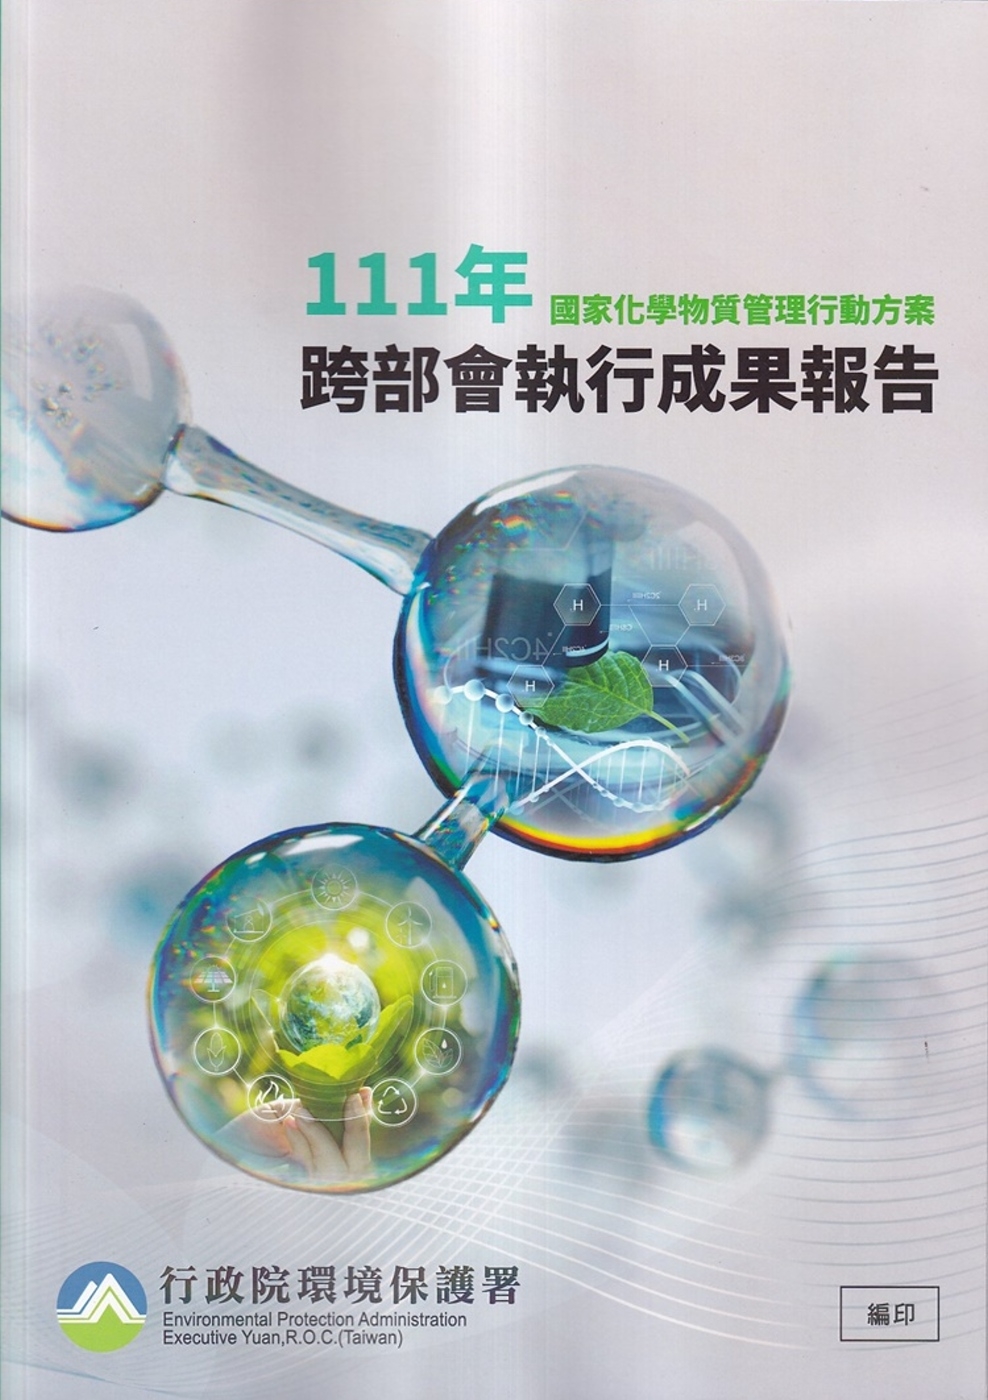 國家化學物質管理行動方案111年跨部會執行成果報告